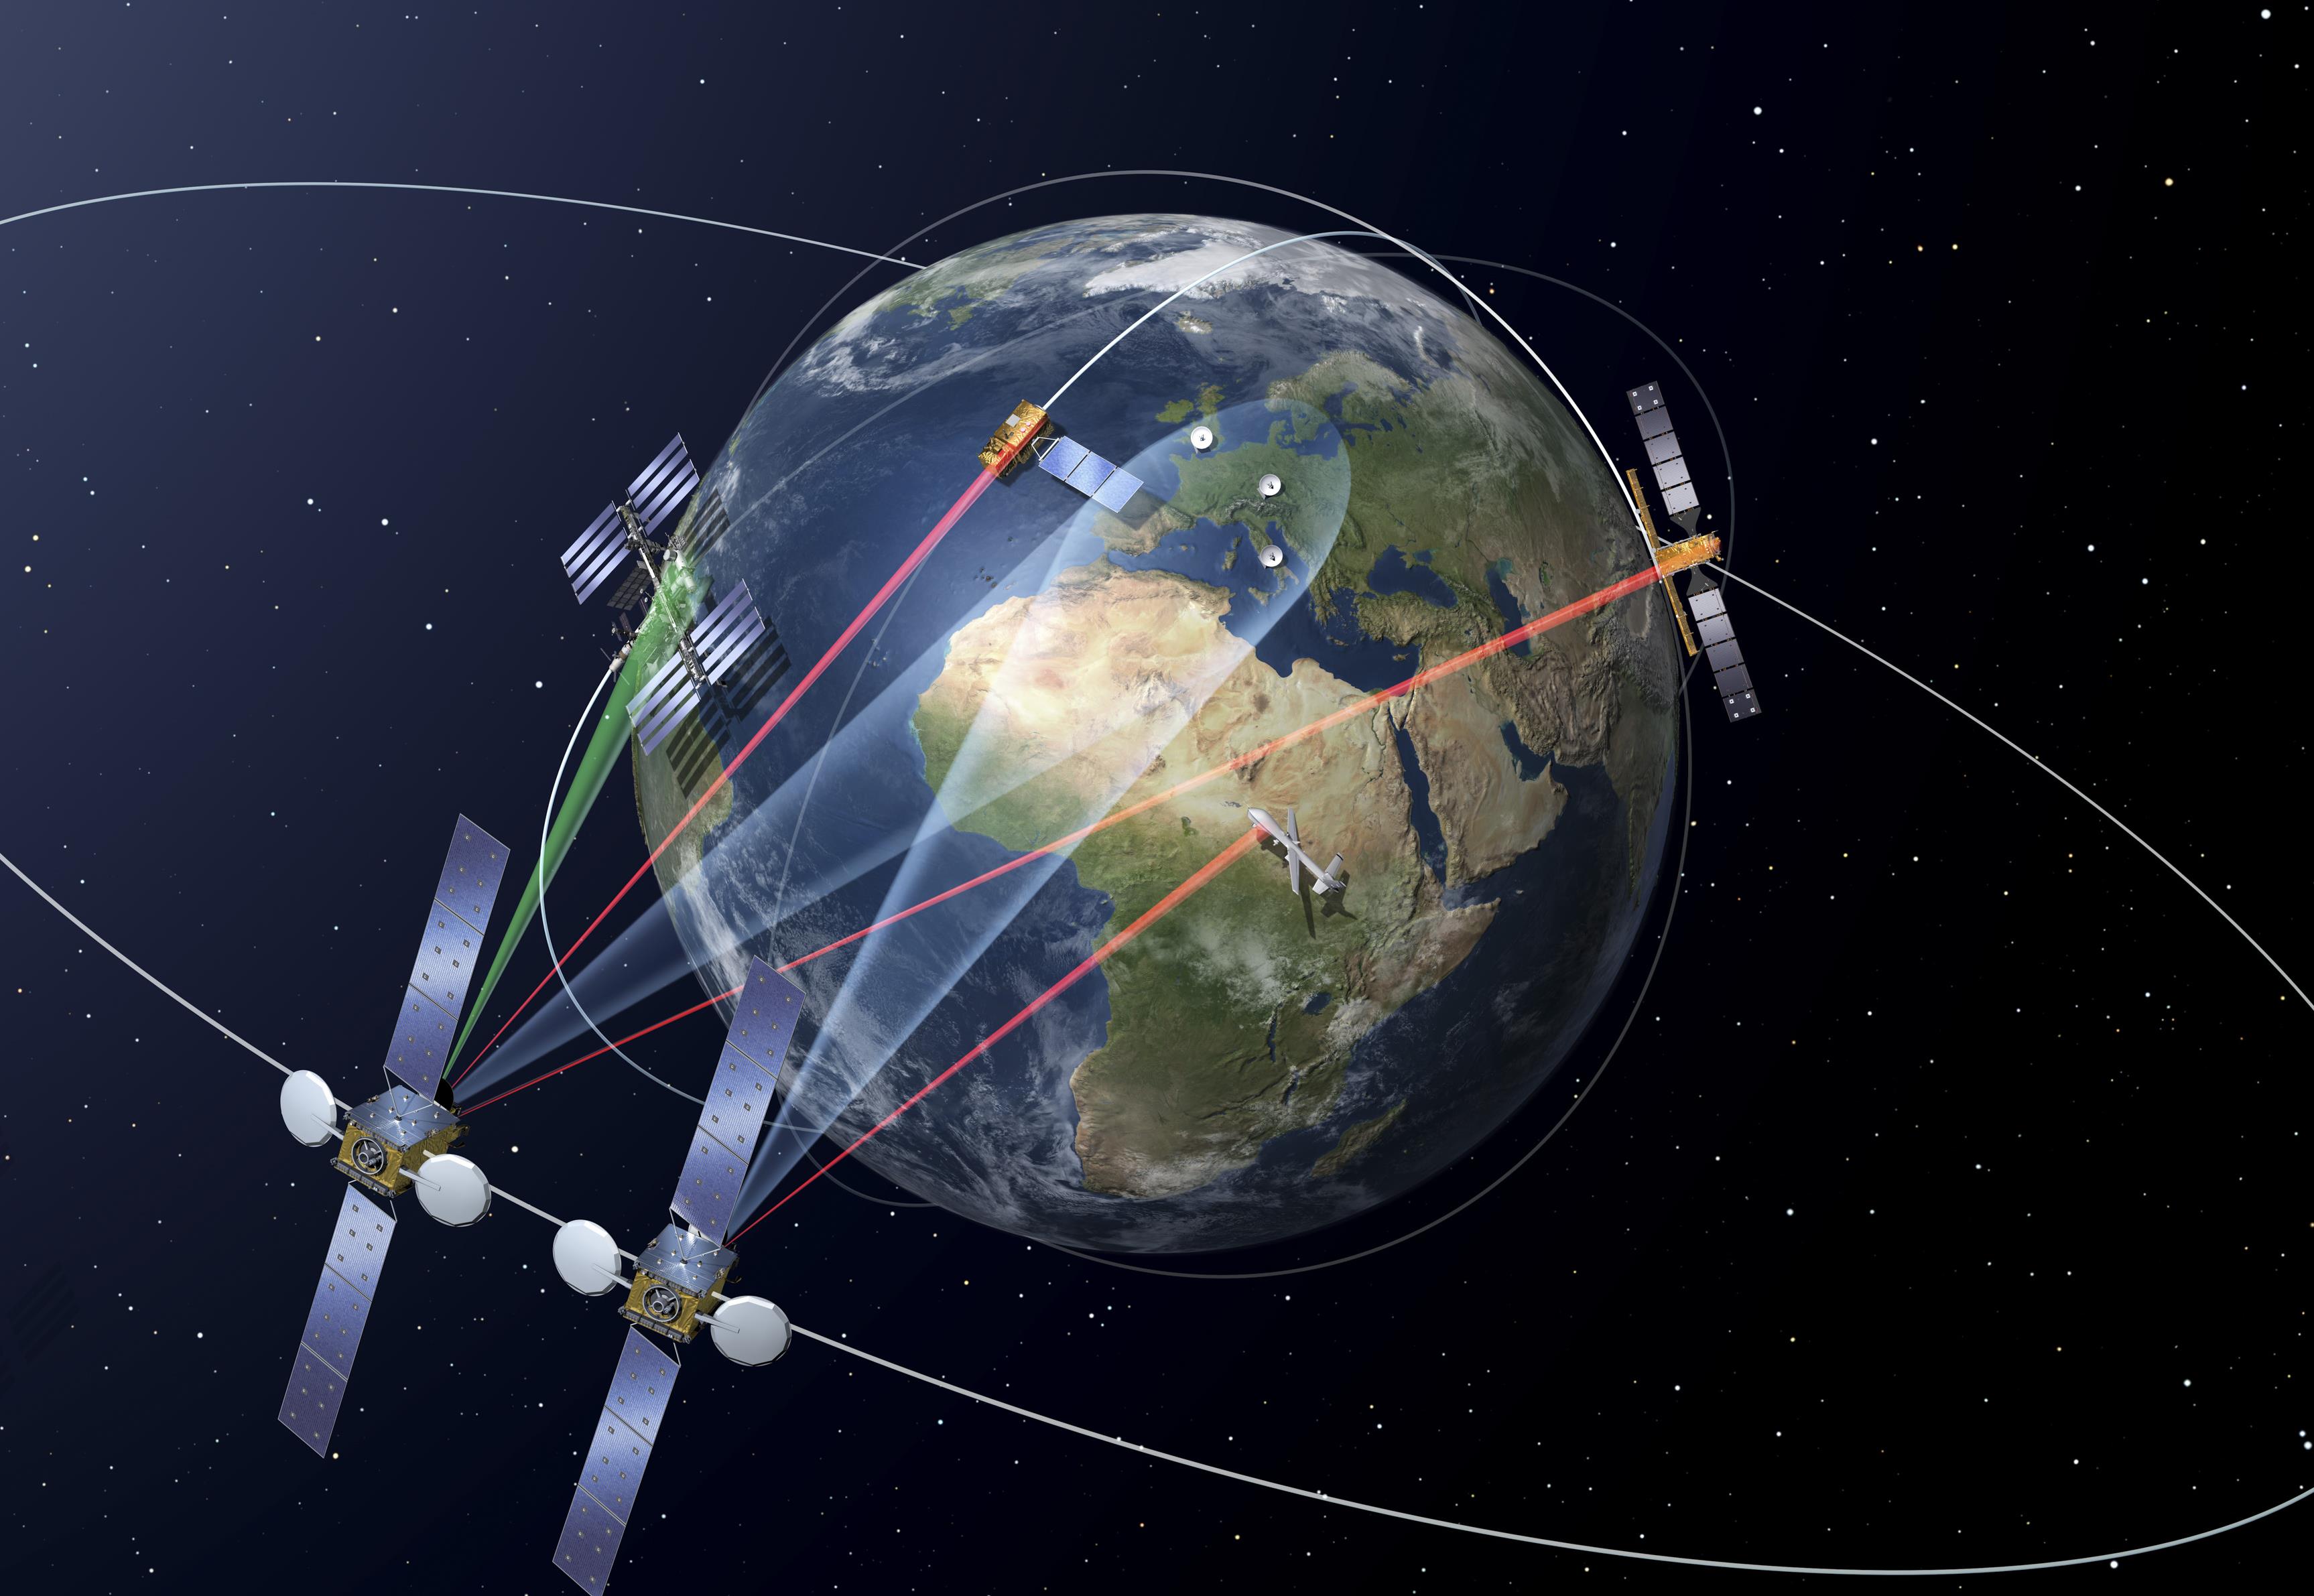 Πρώτη δοκιμή για το νέο σύστημα δορυφορικών επικοινωνιών της Ευρώπης